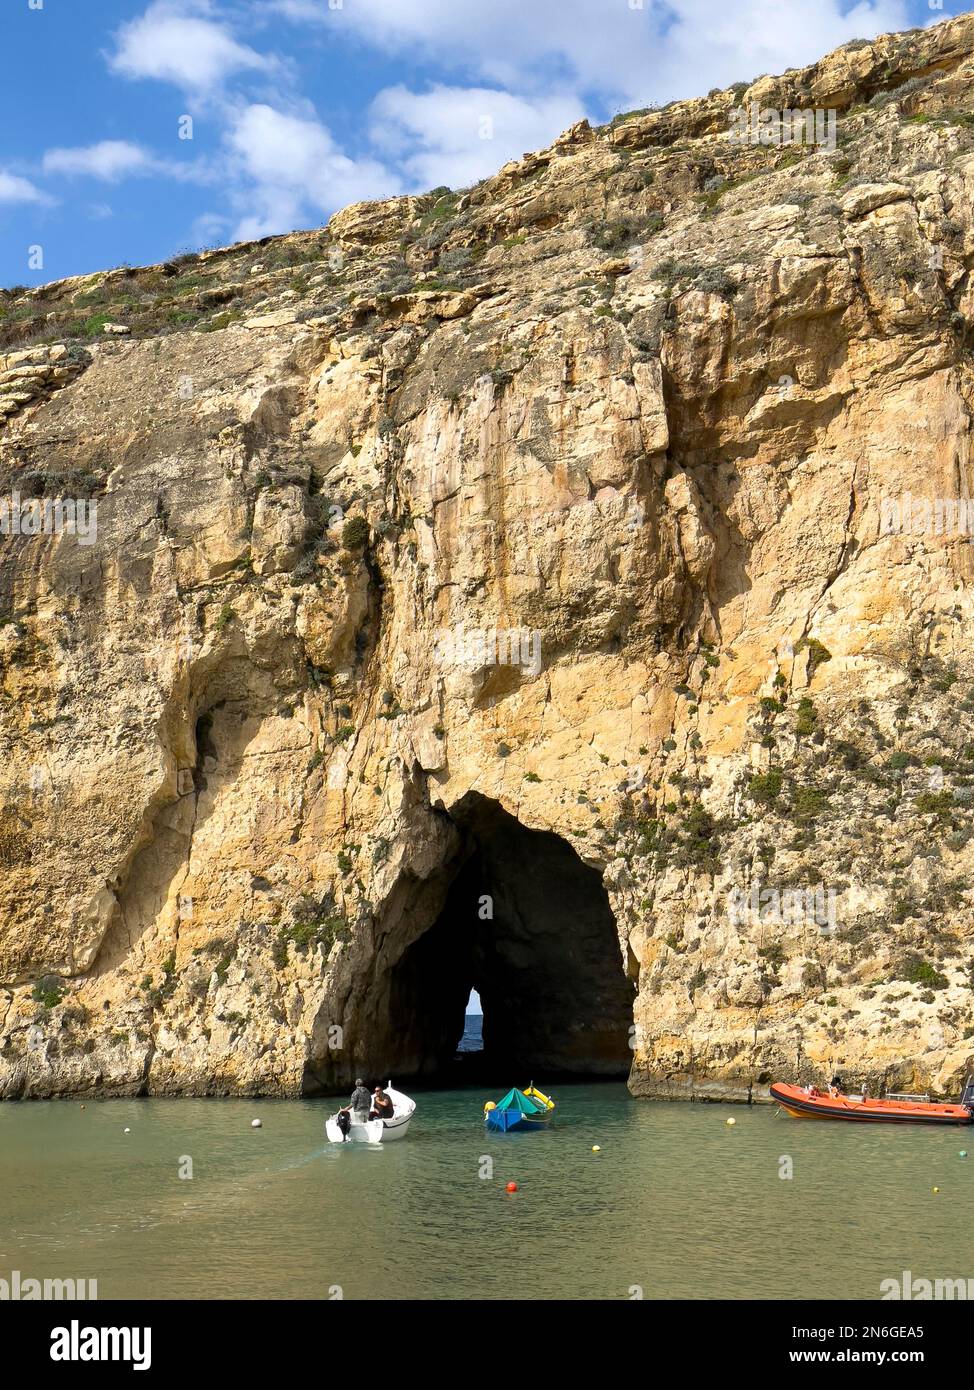 Un petit bateau de pêche navigue dans la mer intérieure de Gozo dans un tunnel du passage à travers la face rocheuse jusqu'à la mer ouverte, île de Gozo, Malte Banque D'Images